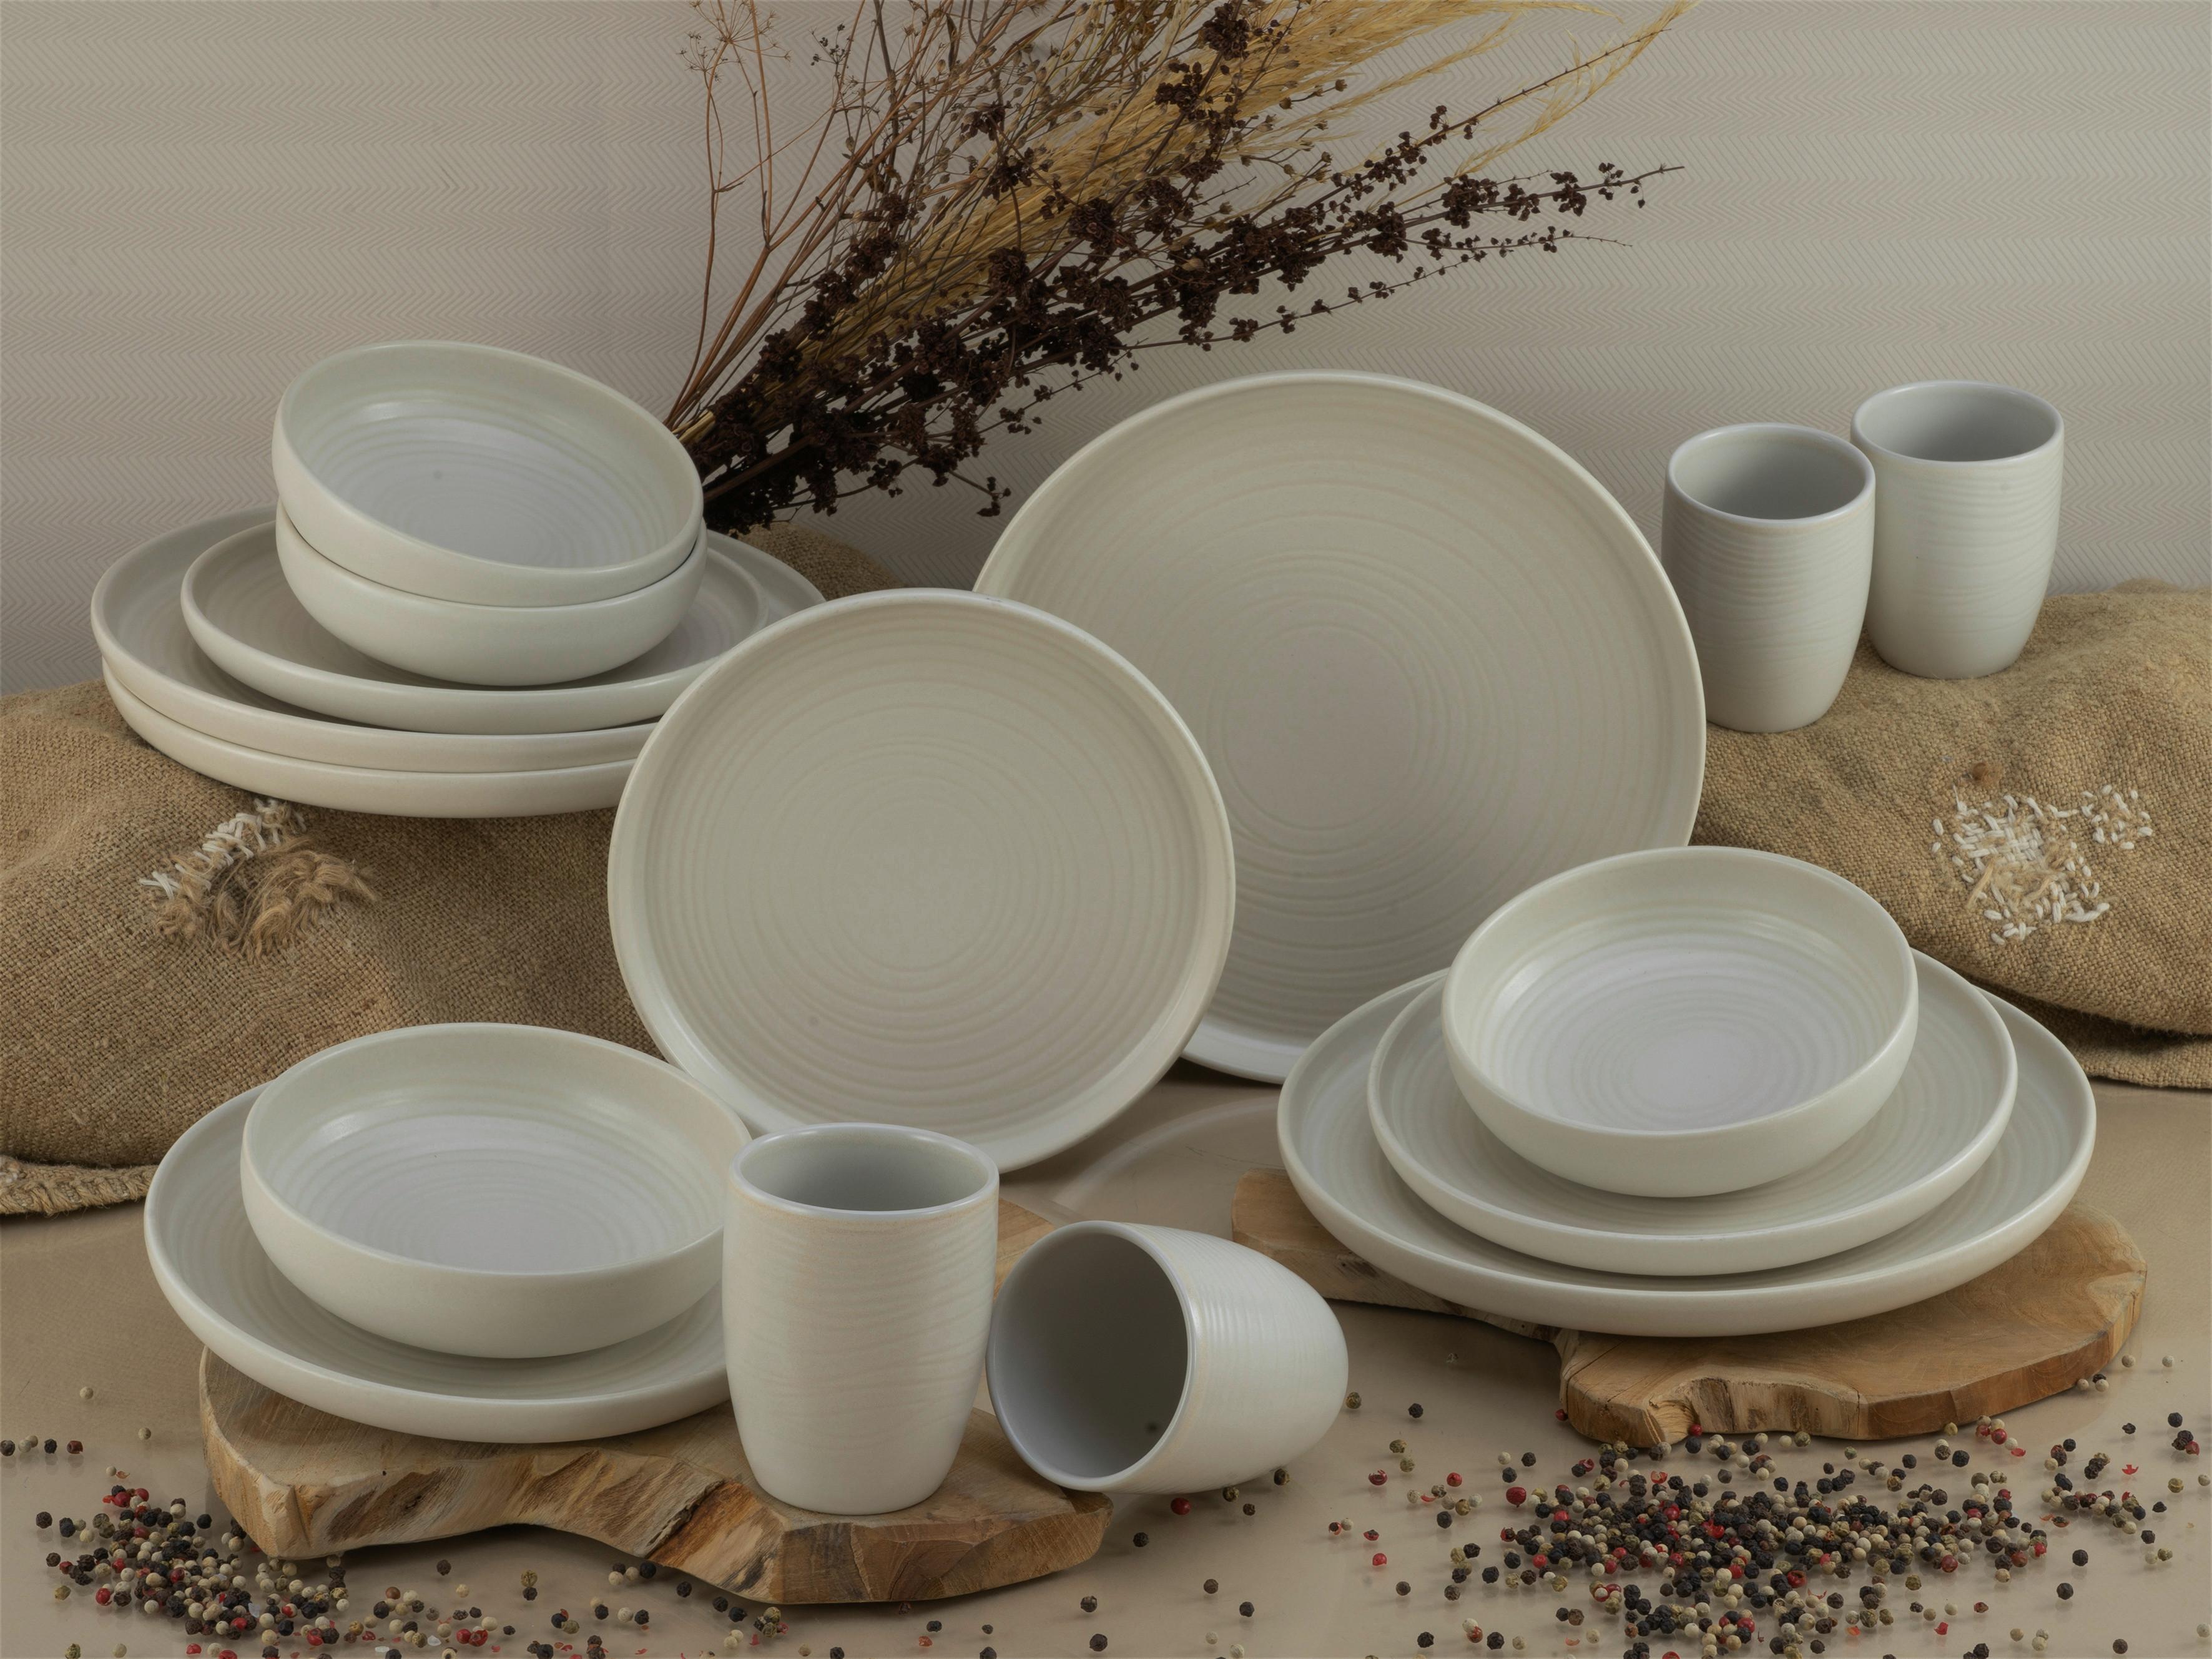 SERWIS OBIADOWO-ŚNIADANIOWY 23863 - biały, Modern, ceramika (40,5/37/49,5cm) - Creatable